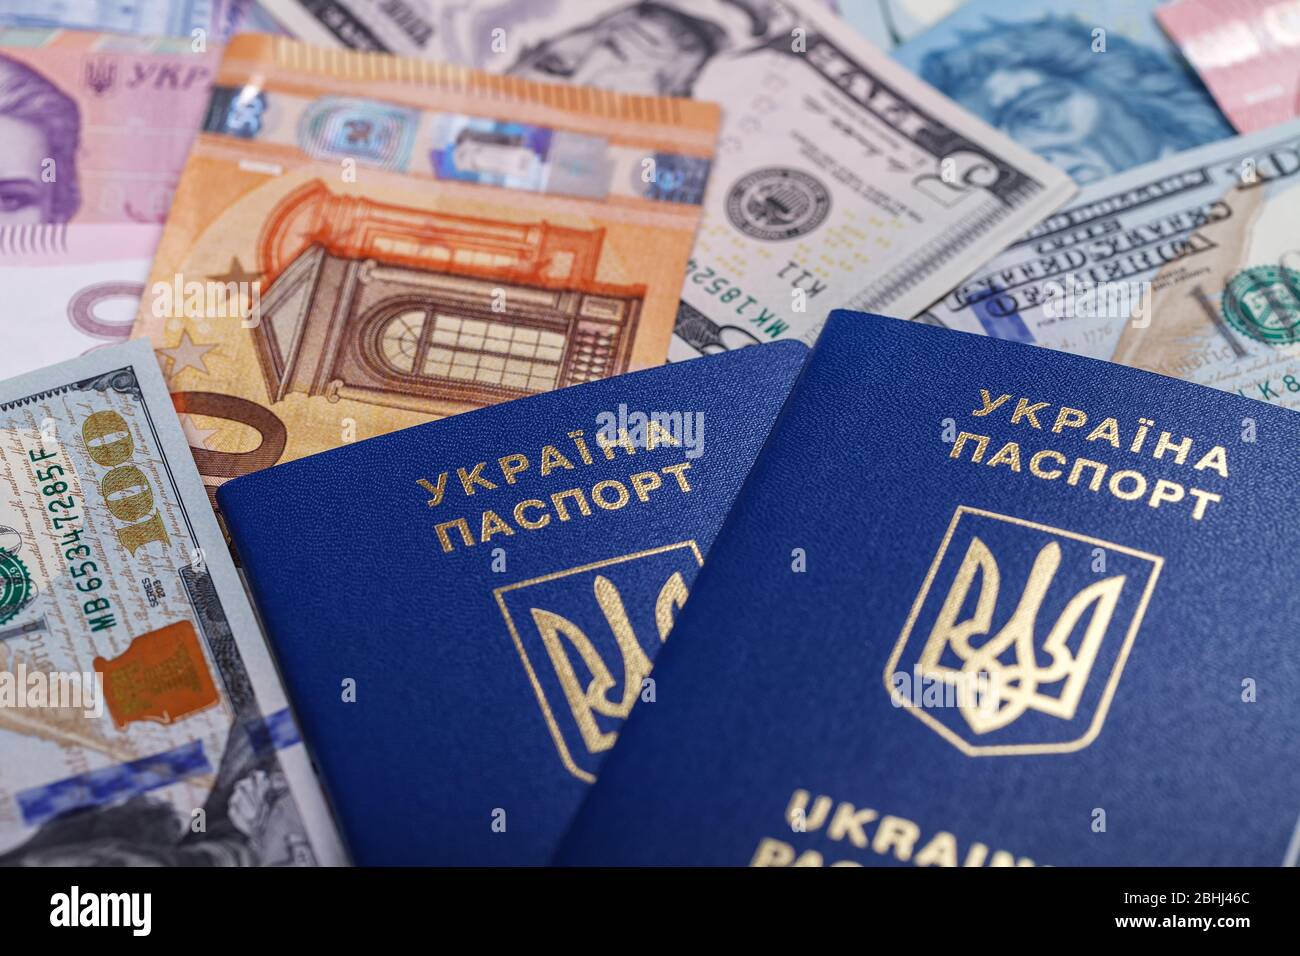 Zwei ukrainische biometrische Pässe liegen vor dem Hintergrund von Währungen aus verschiedenen Ländern der Welt, Euro, Dollar, Griwnja, Forint. Der Stockfoto